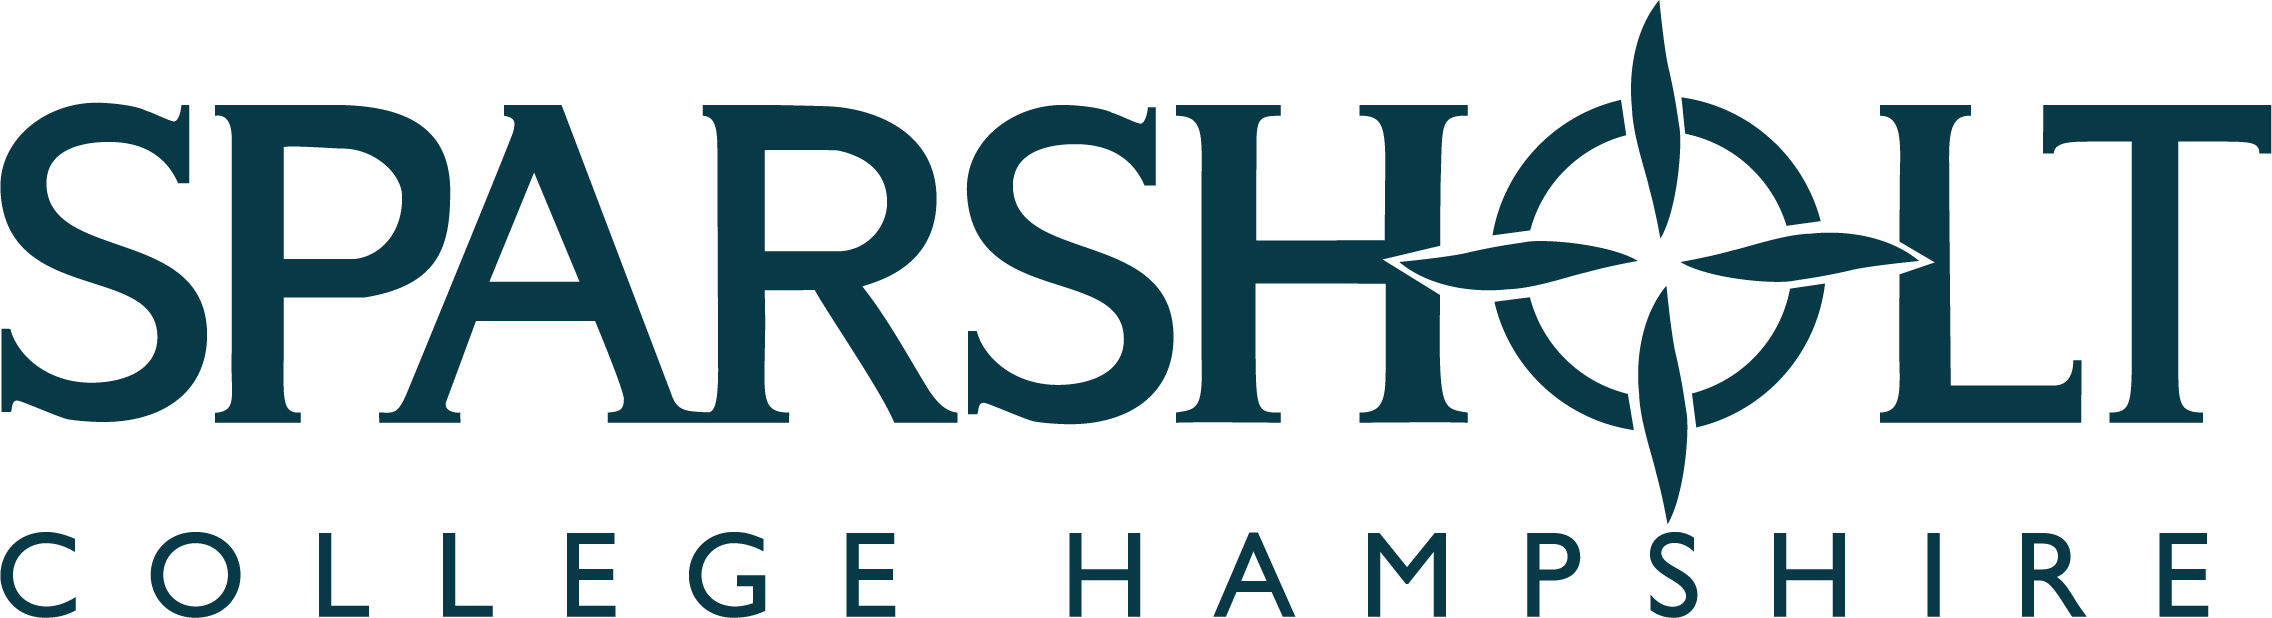 Sparsholt-logo-text-colour